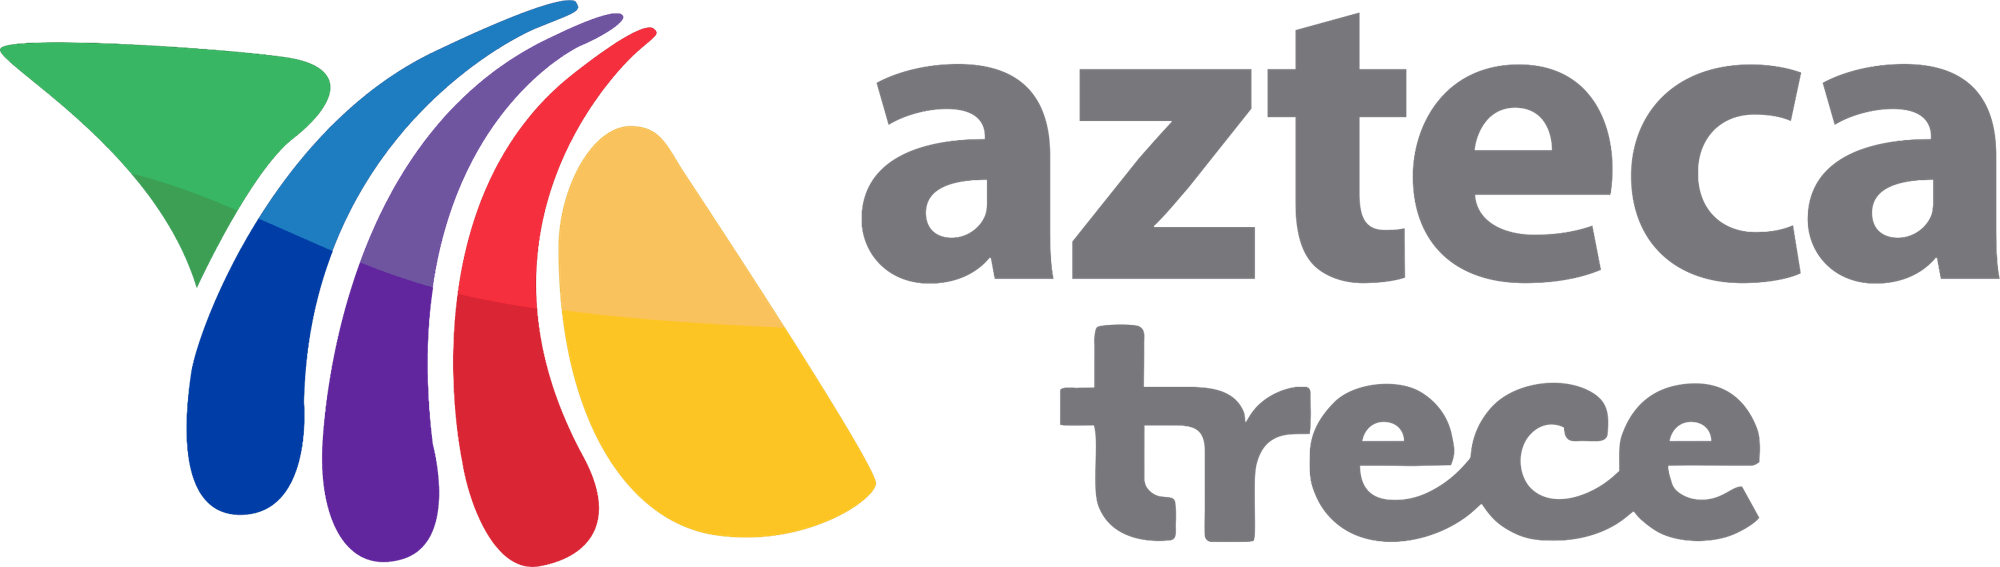 Trece Logo - Azteca Uno | Logopedia | FANDOM powered by Wikia